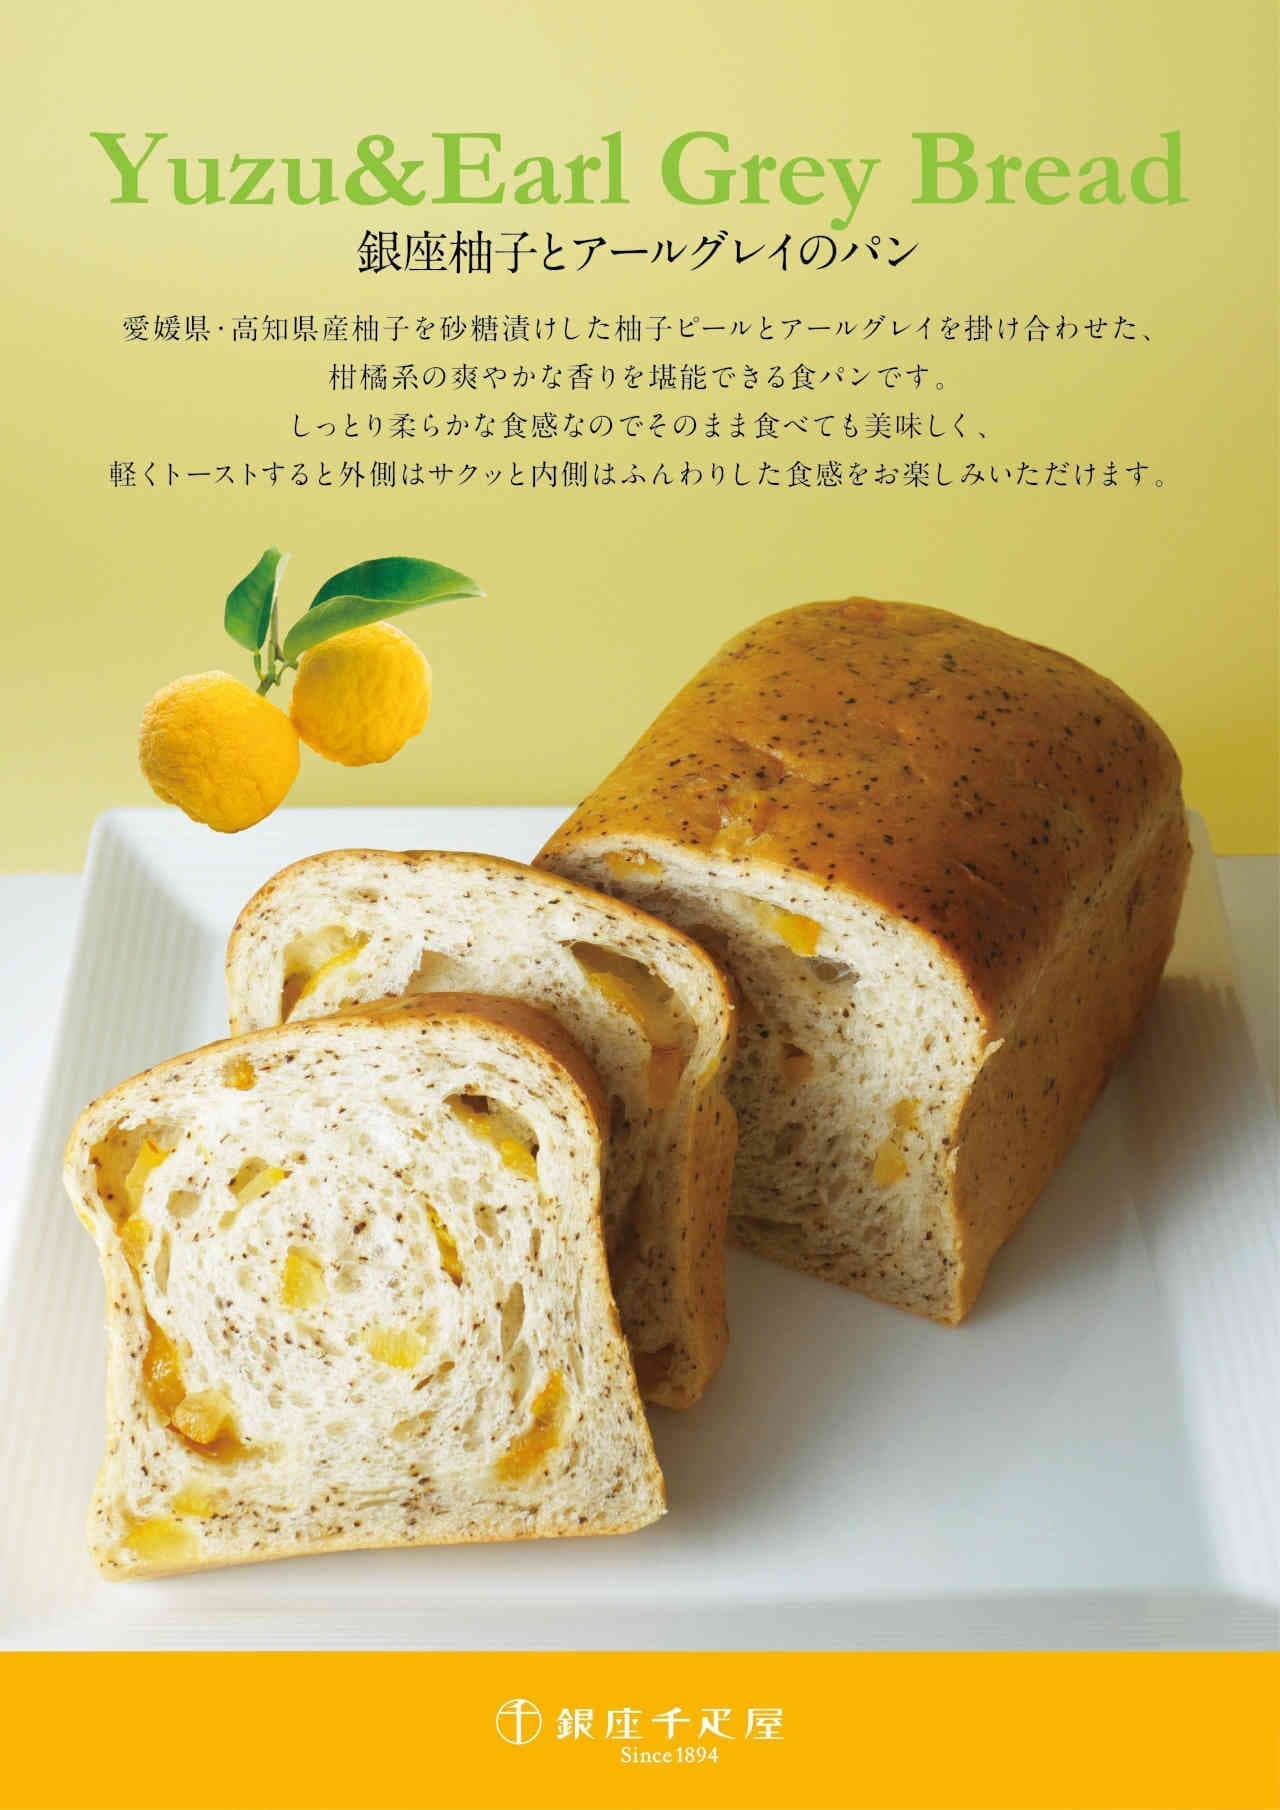 Ginza Sembikiya "Ginza Yuzu and Earl Grey Bread